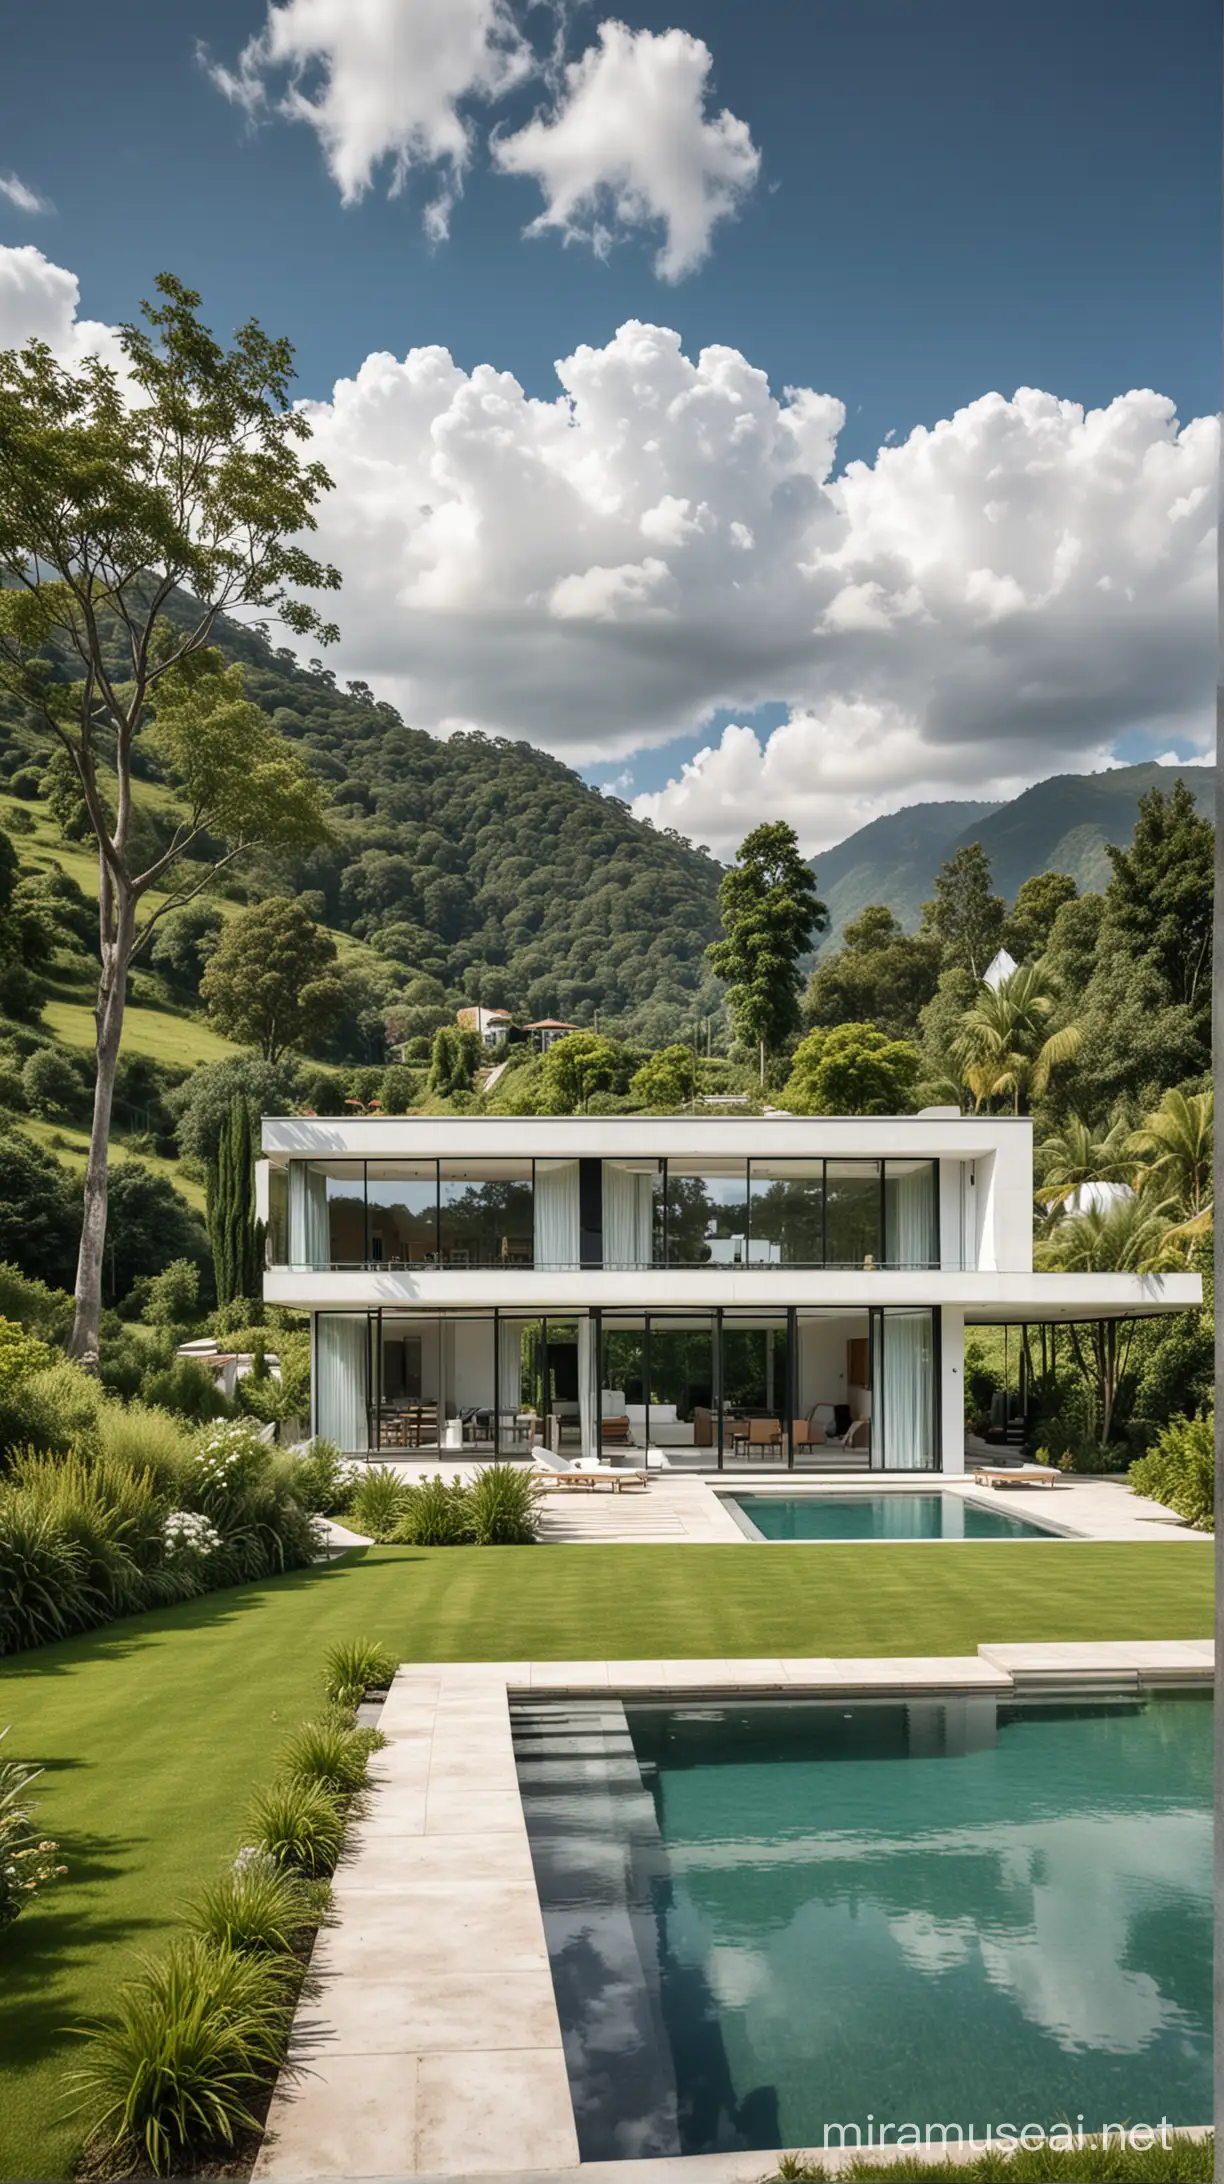 sebuah rumah modern dengan tampilan minimalis, terletak di tengah perbukitan hijau yang mempesona. Bangunannya memiliki desain geometris yang bersih dengan jendela-jendela besar yang memungkinkan cahaya alami masuk ke dalam ruangan. Di sekitar rumah, terdapat taman yang rapi dan kolam renang yang menghadap ke lanskap alam yang indah. Langit cerah dengan awan putih berarak melengkapi pemandangan yang menenangkan.